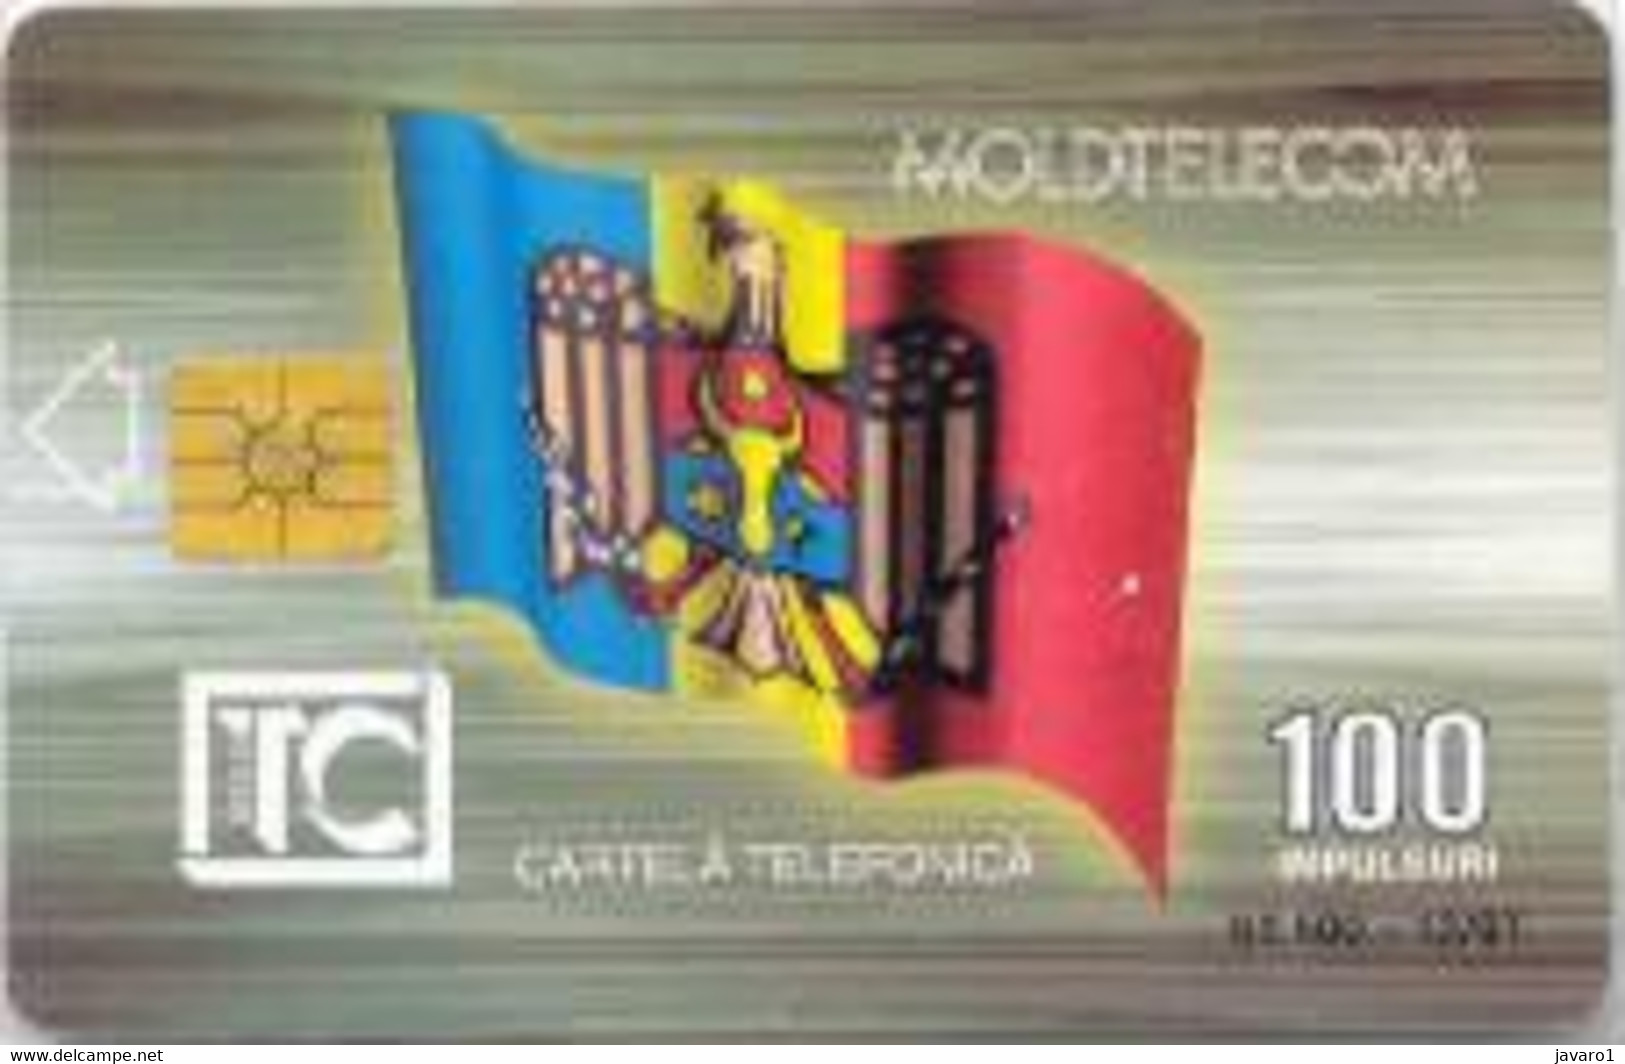 MOLDAVIA : 15 100 Brown ARCA TRIUMFALA 12/97 USED - Moldawien (Moldau)